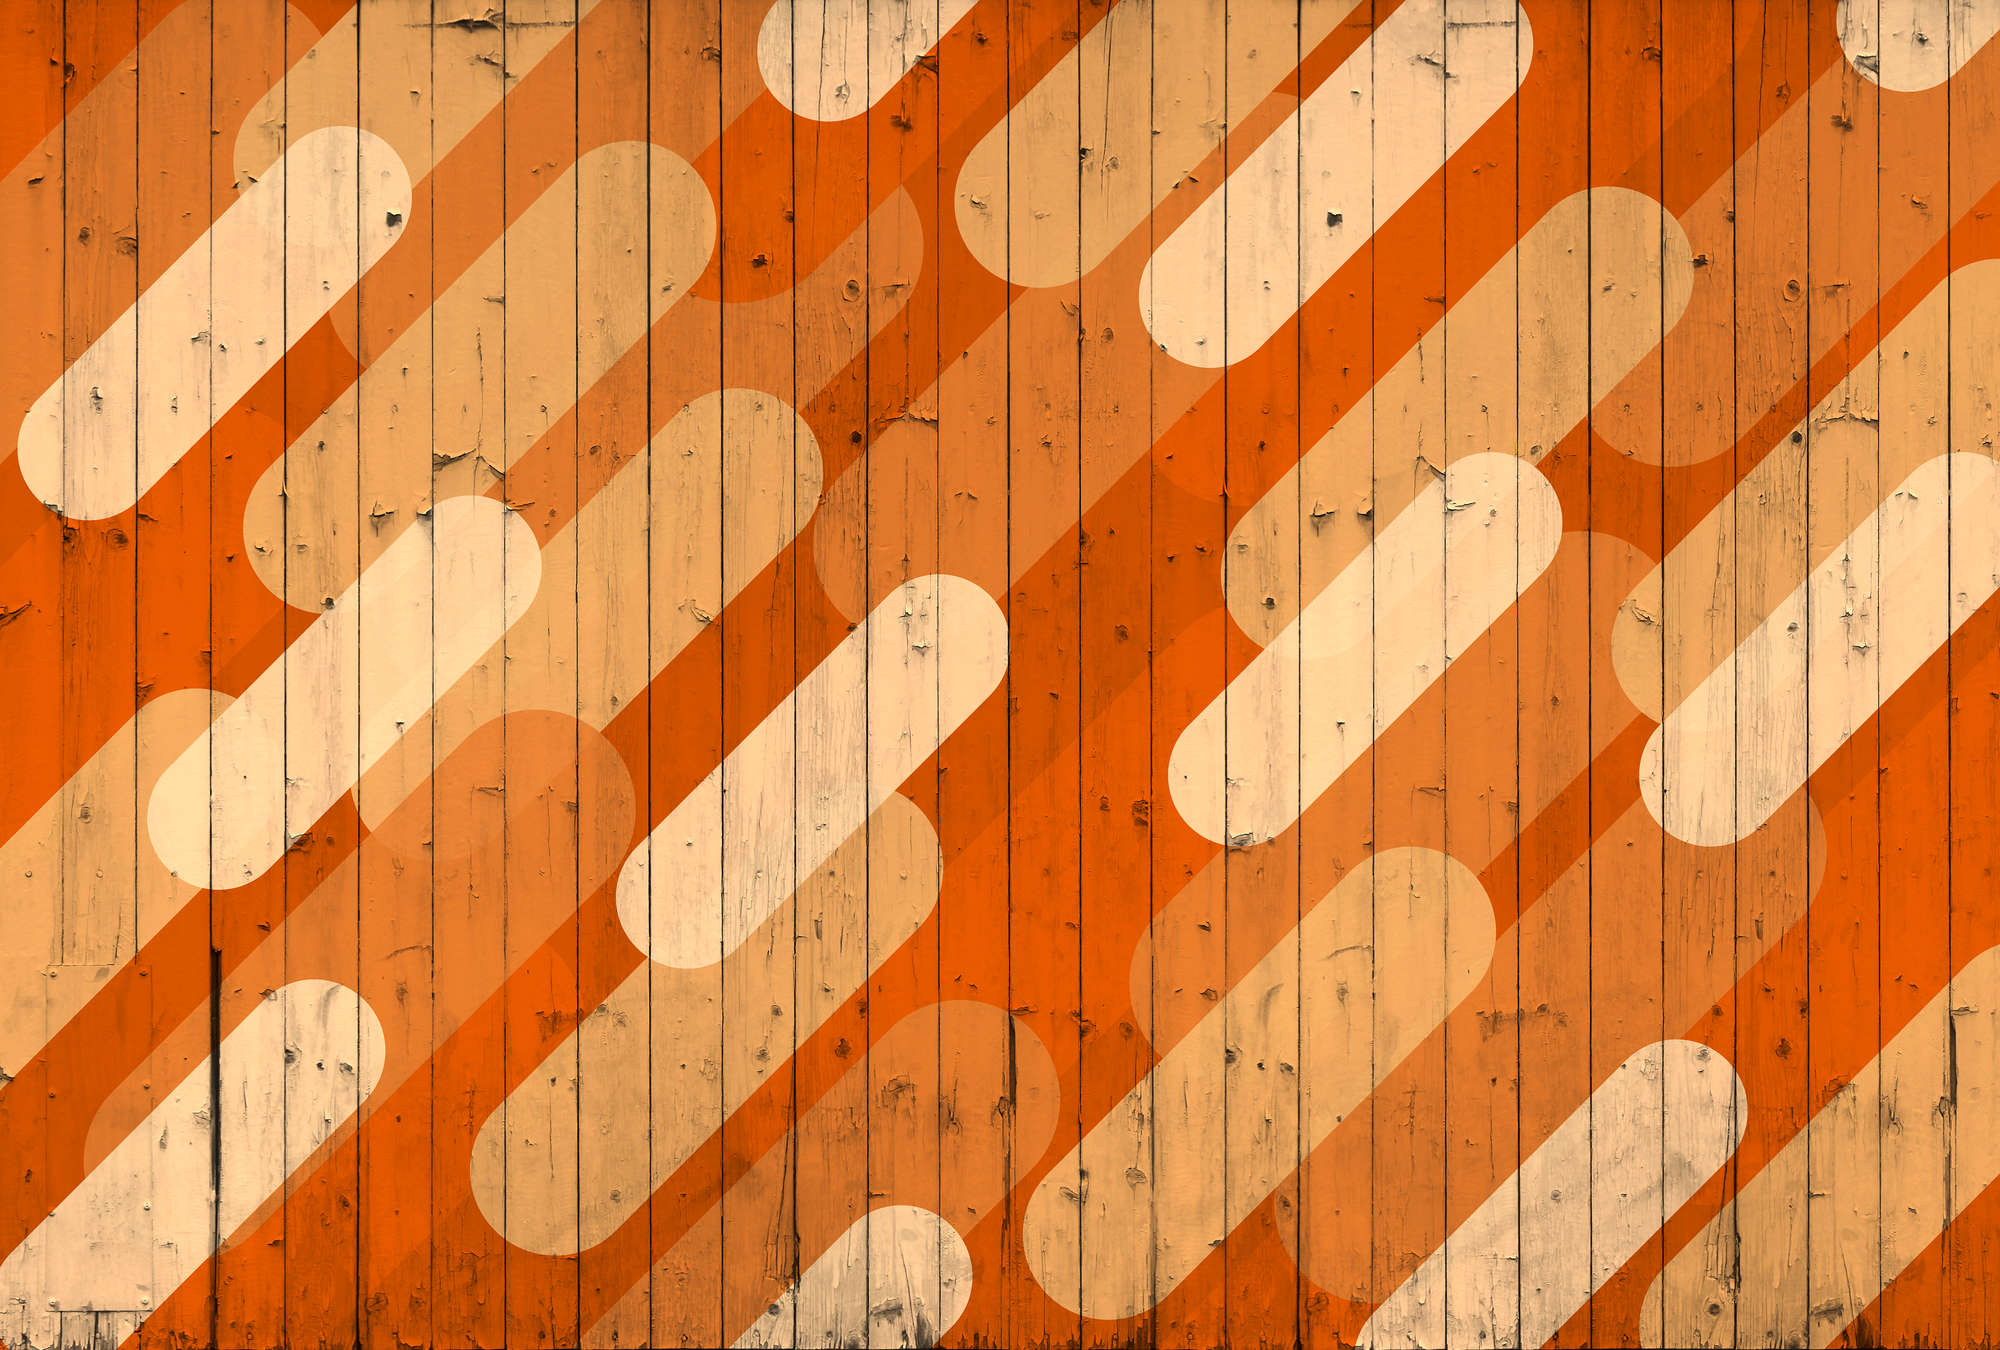             Fototapete mit Bretteroptik & schrägem Streifendesign – Orange, Beige, Creme
        